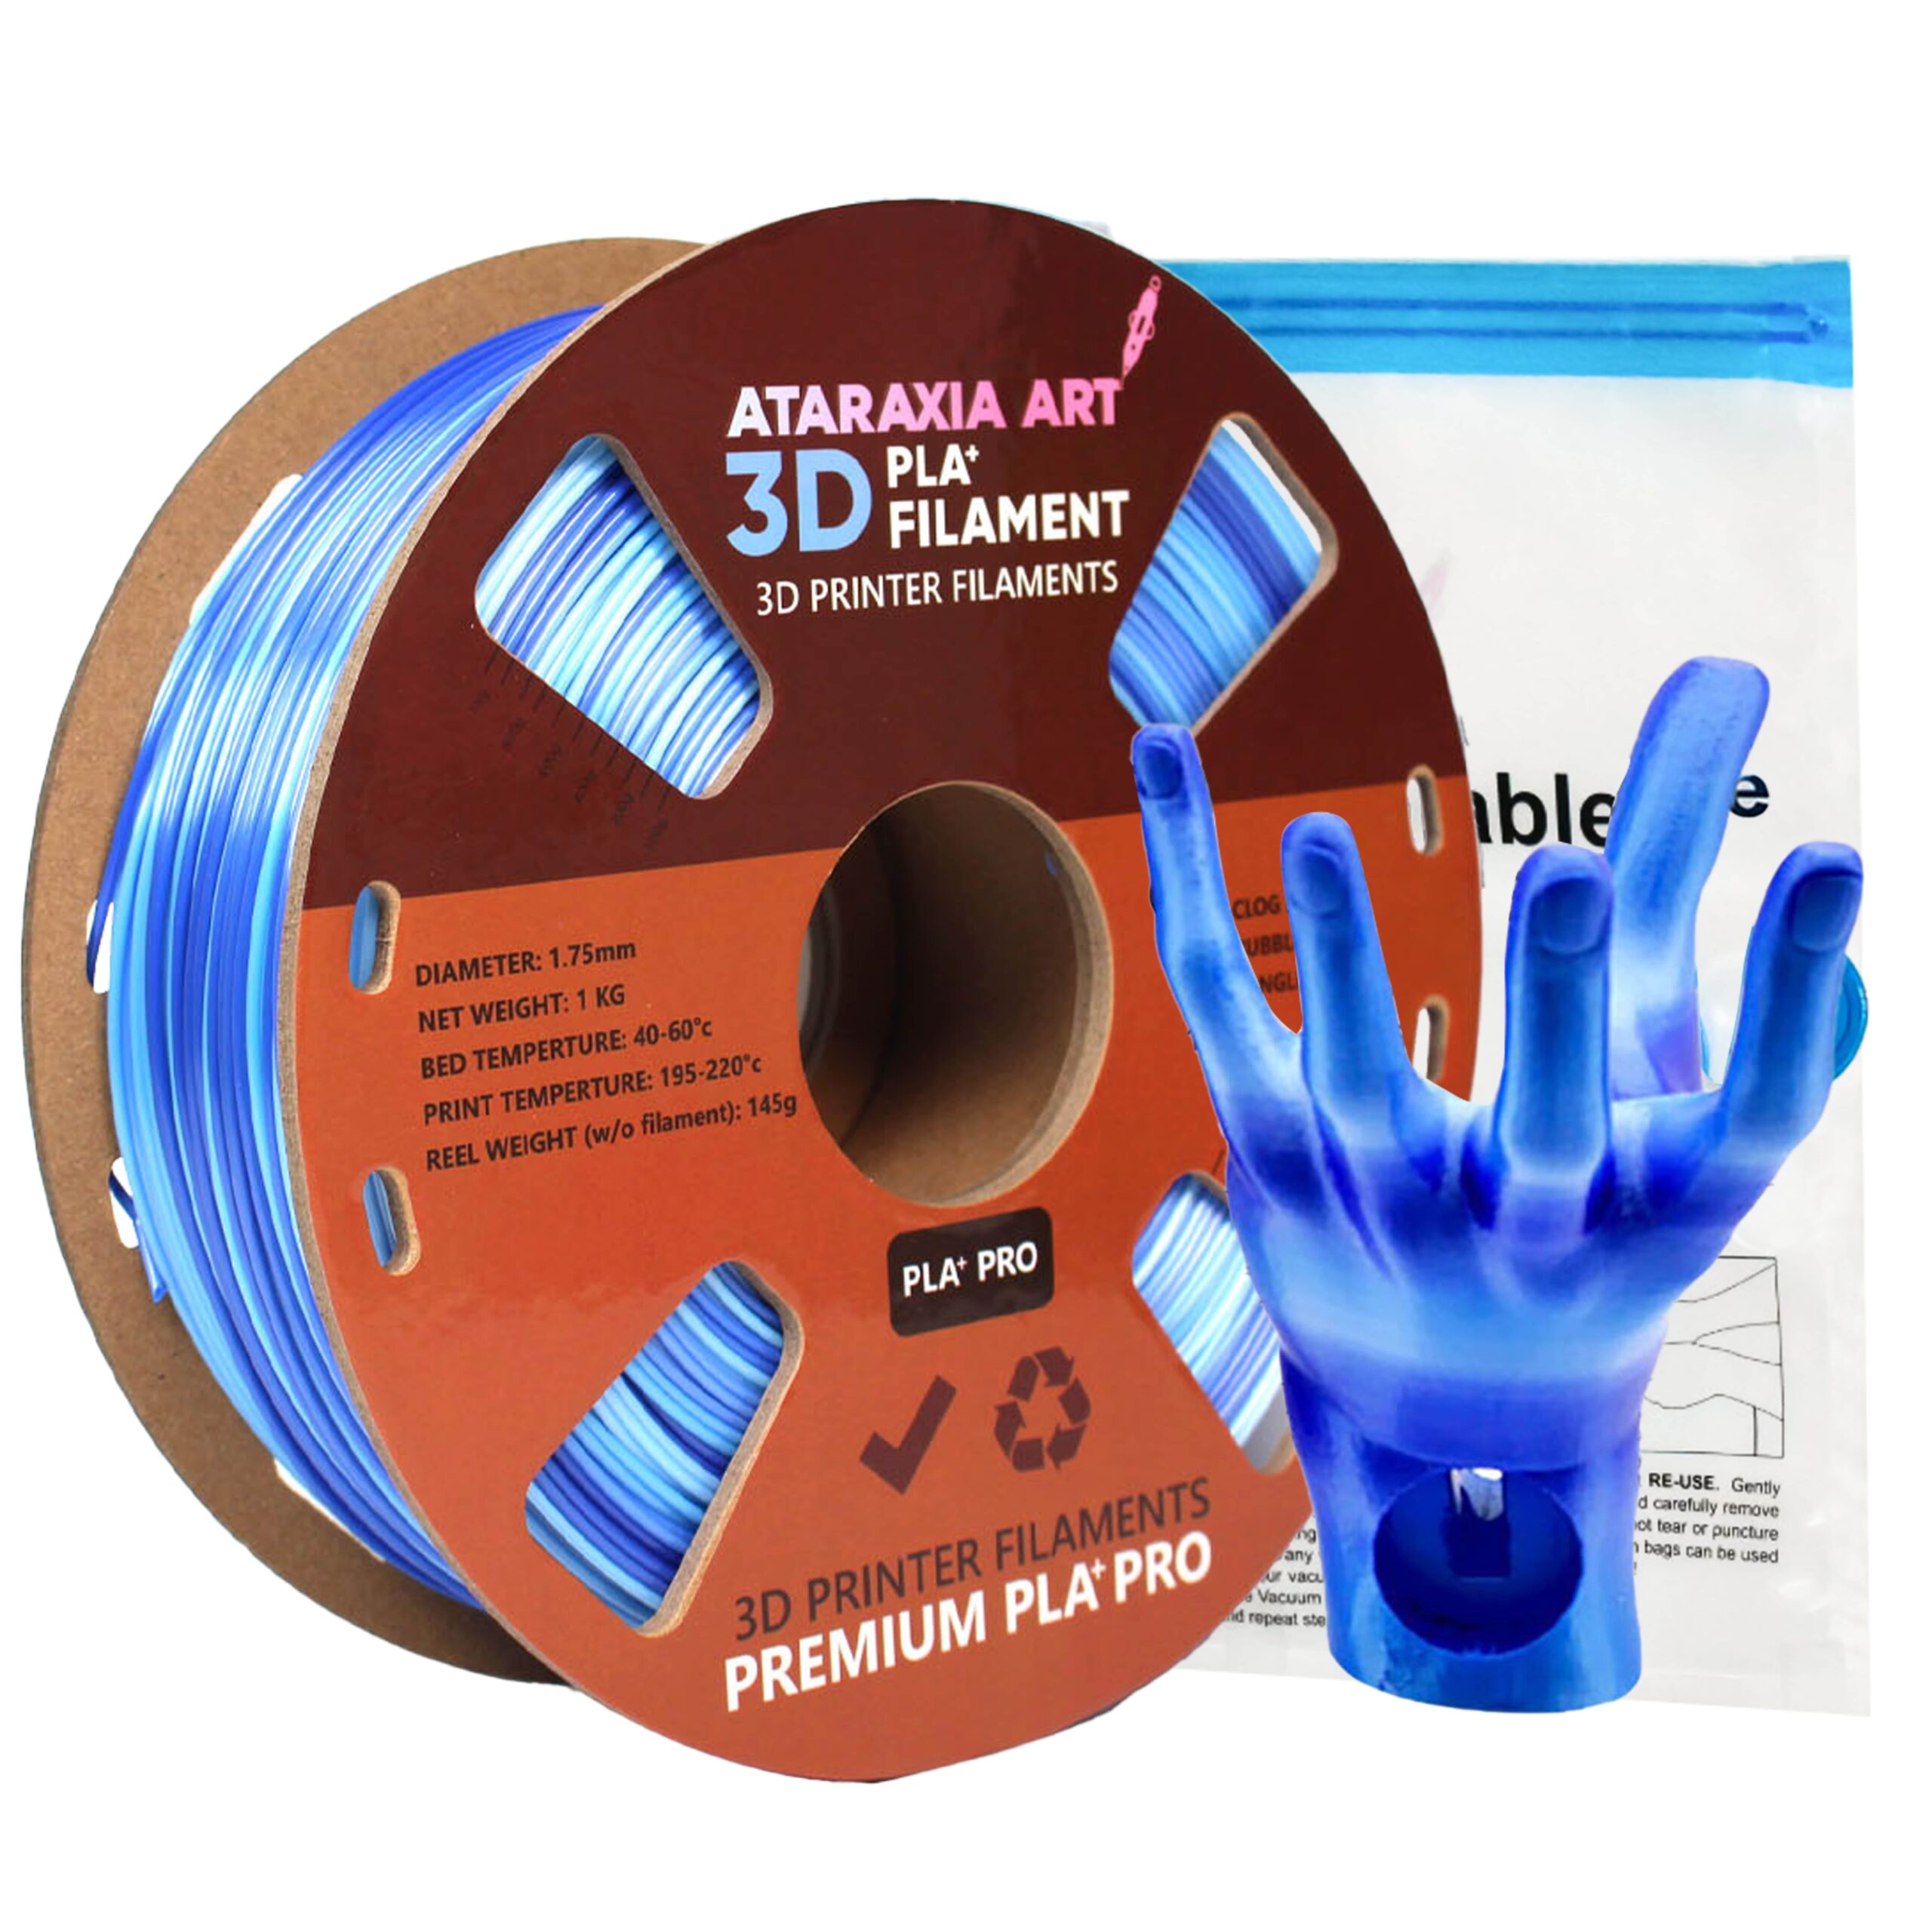 ATARAXIA ART Green PETG Filament 1.75mm,1kg/2.2lb Spool,Dimensional  Accuracy ±0.02mm, With Filament Storage Bags,Fit Most FDM 3D  Printer,Pantone Match • Ataraxiaart